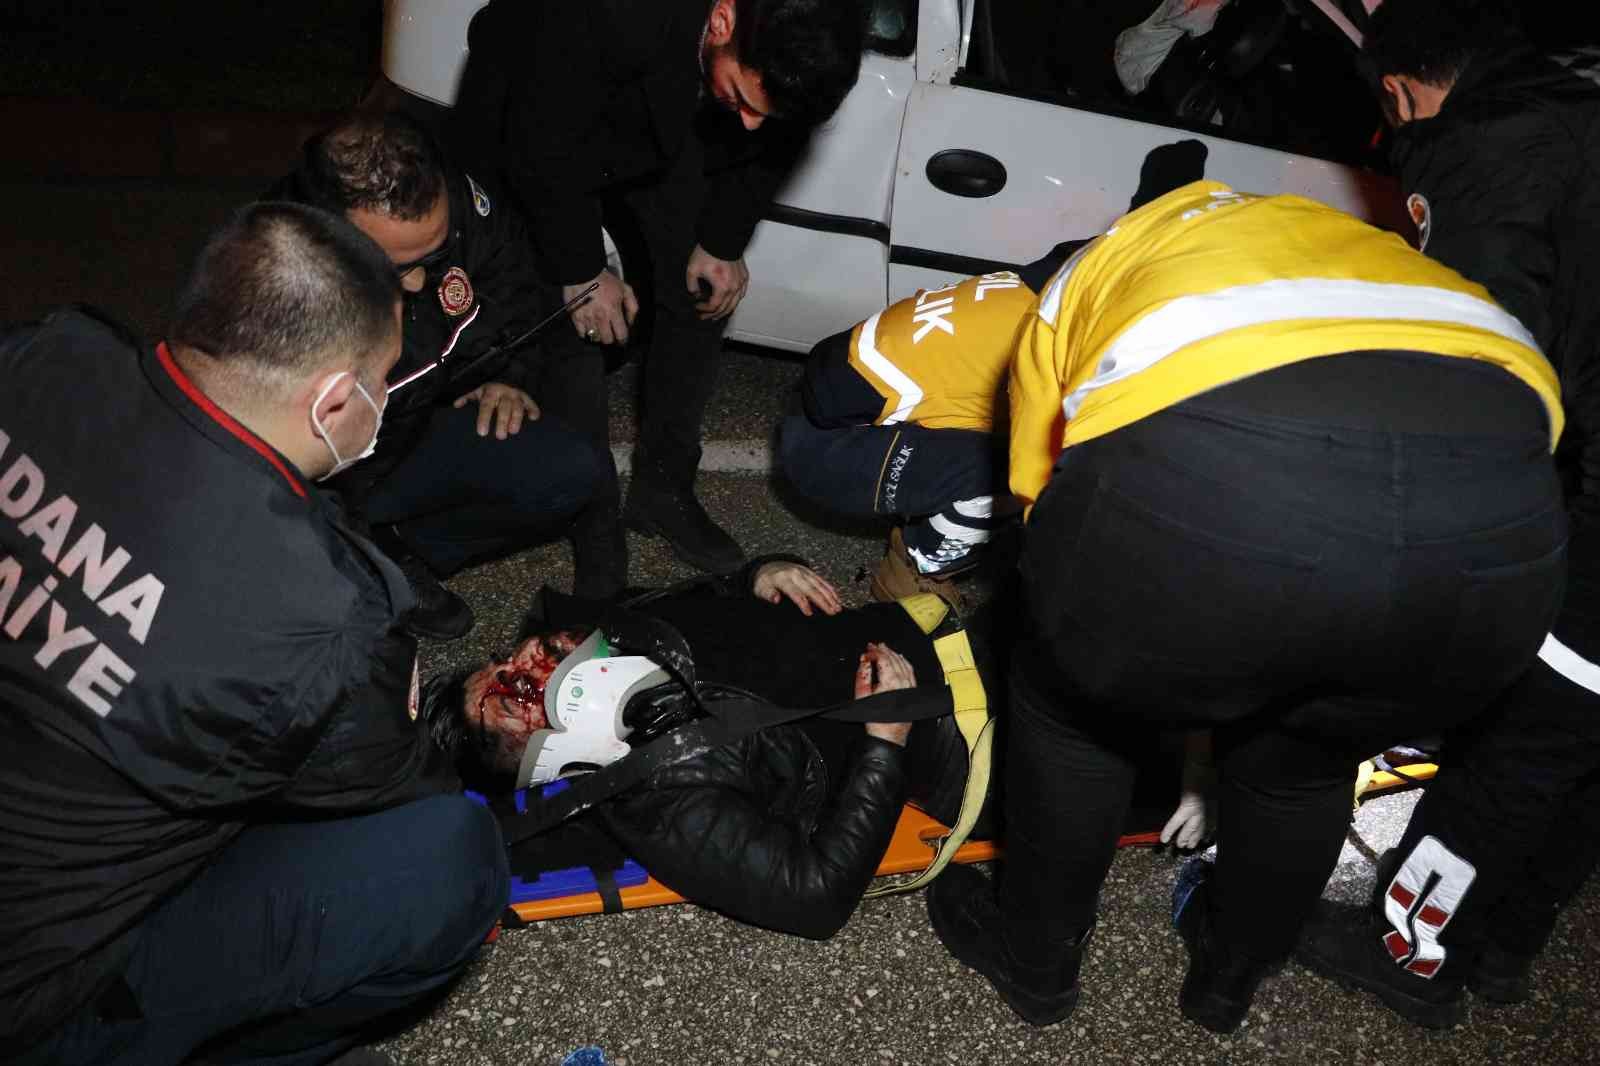 Adana otomobil ve cip çarpıştı: 3 yaralı #adana